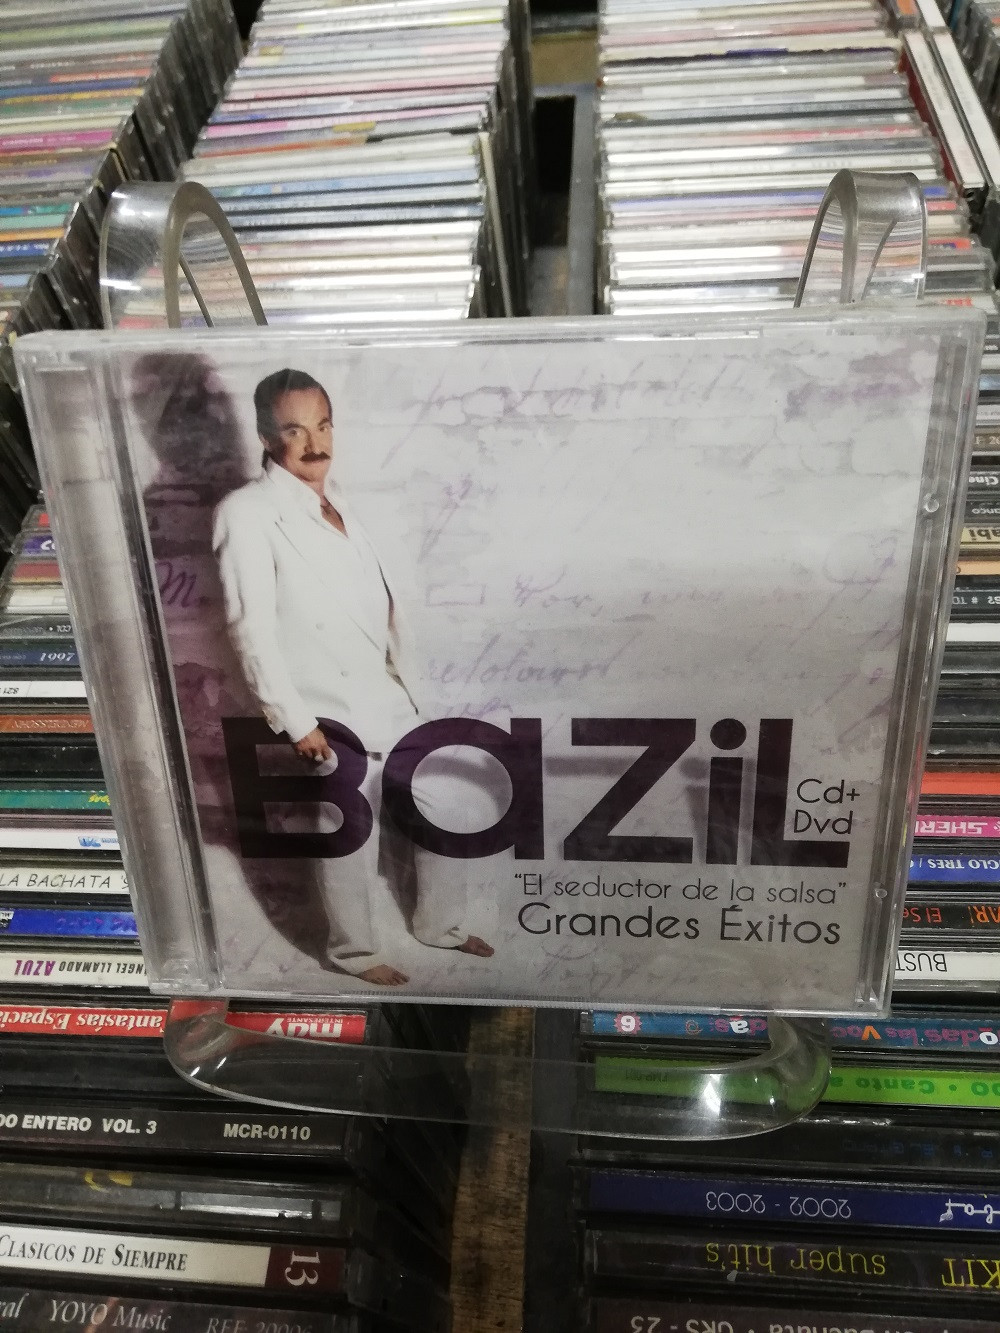 Imagen CD + DVD NUEVO BAZIL - GRANDES EXITOS